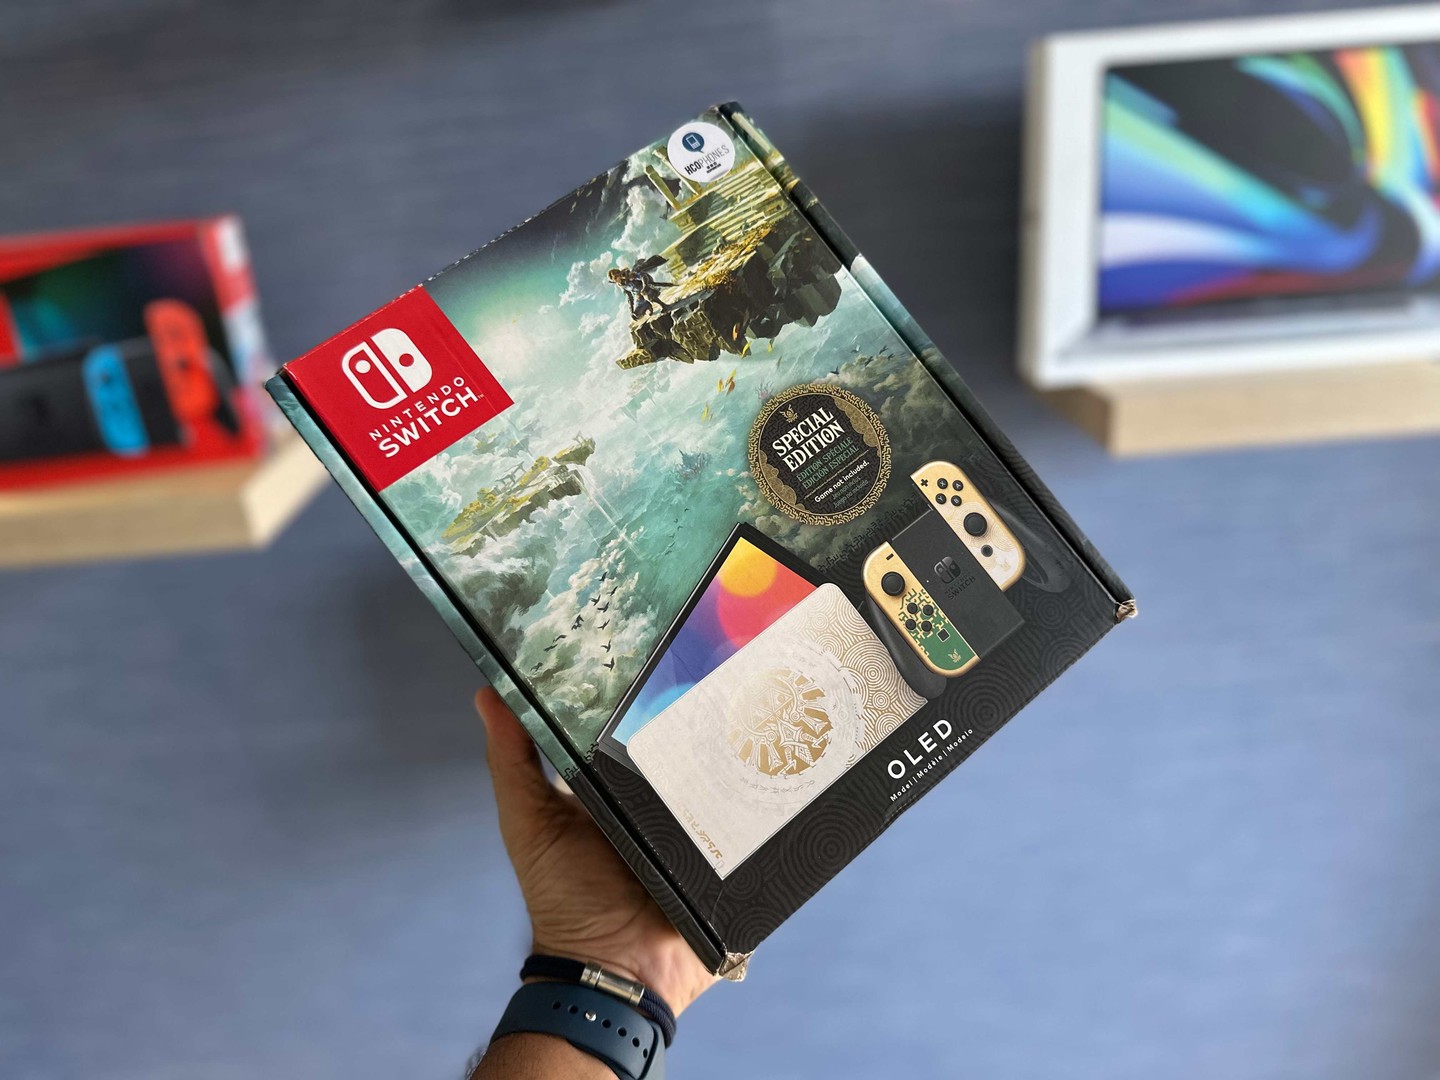 consolas y videojuegos - Nintendo Switch OLED ZELDA Special Edition Nuevo Sellado Garantía $ 19,300 NEG 0